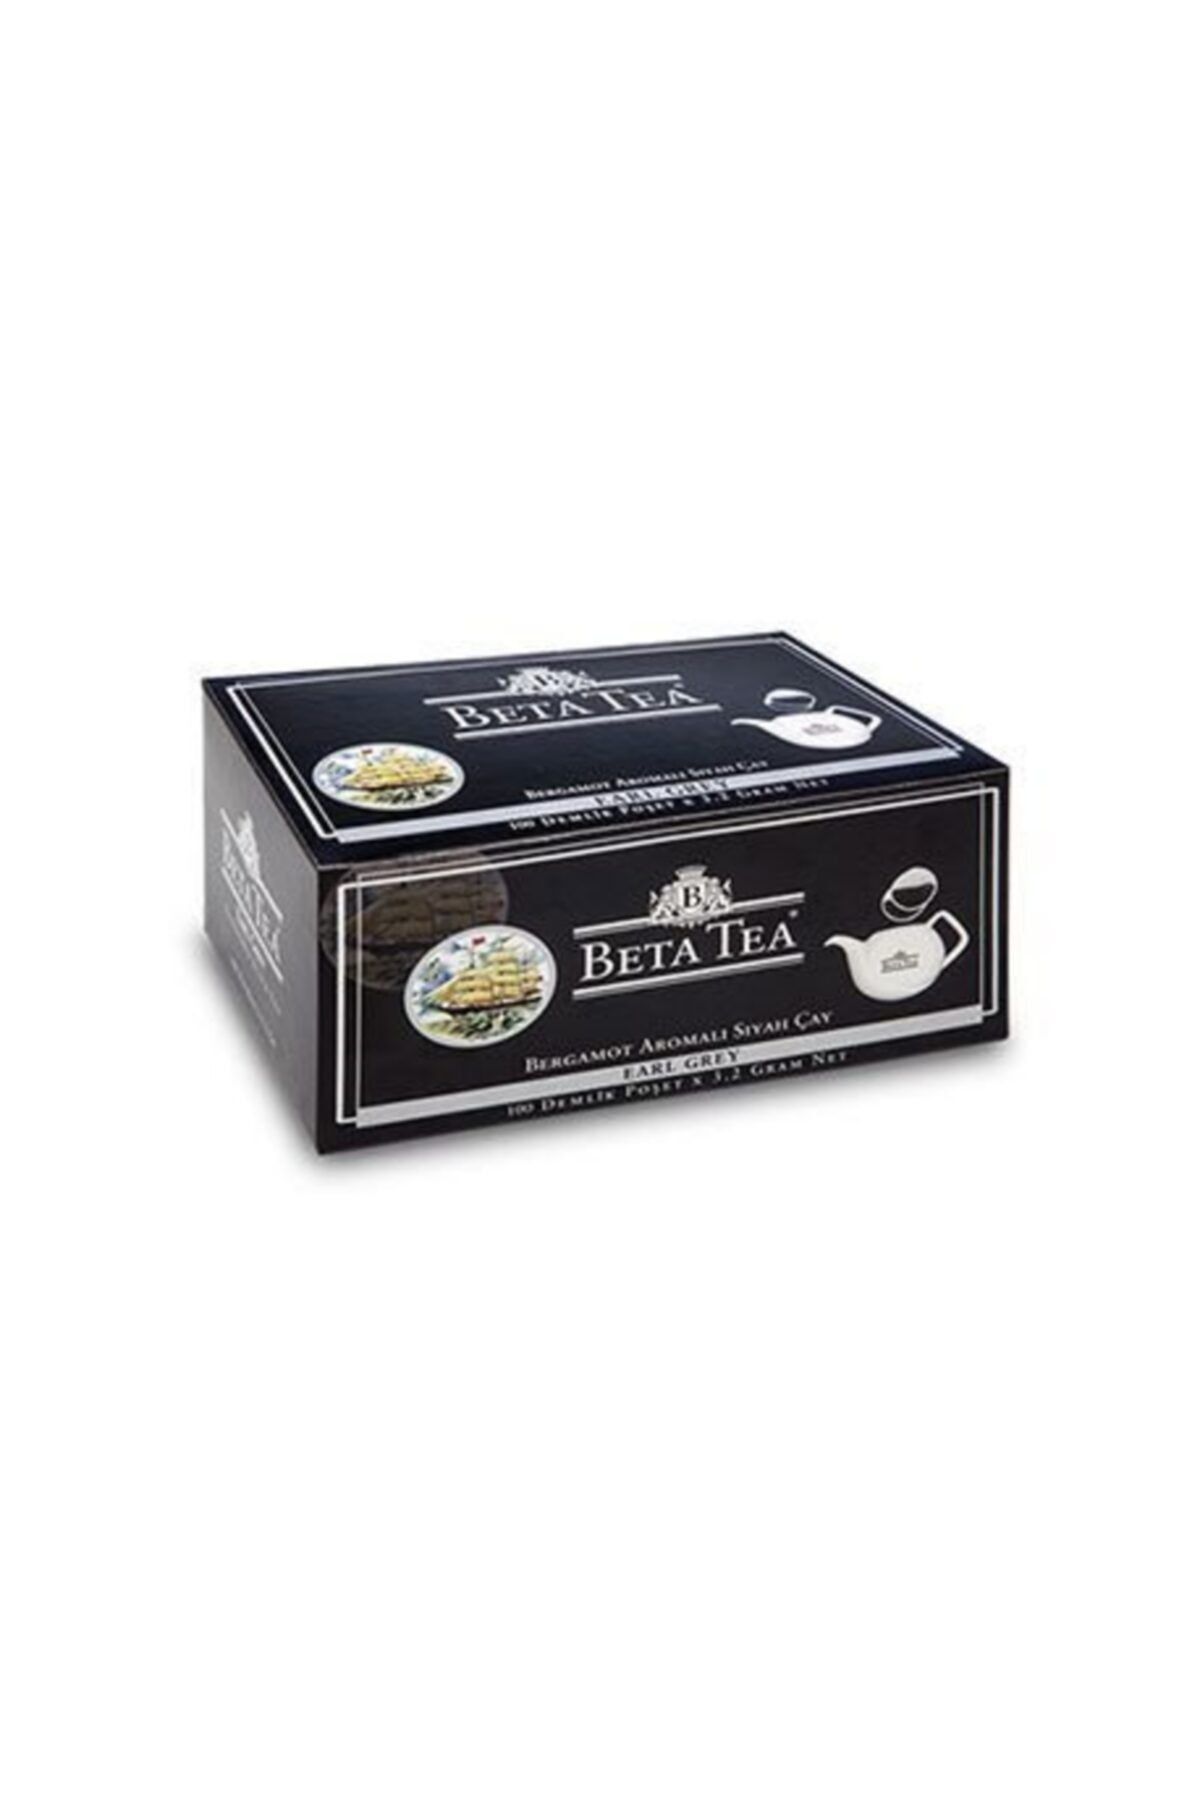 Beta Tea Earl Grey Demlik Poşet 100 X 3,2 gr Bergamot Tomurcuk Çayı